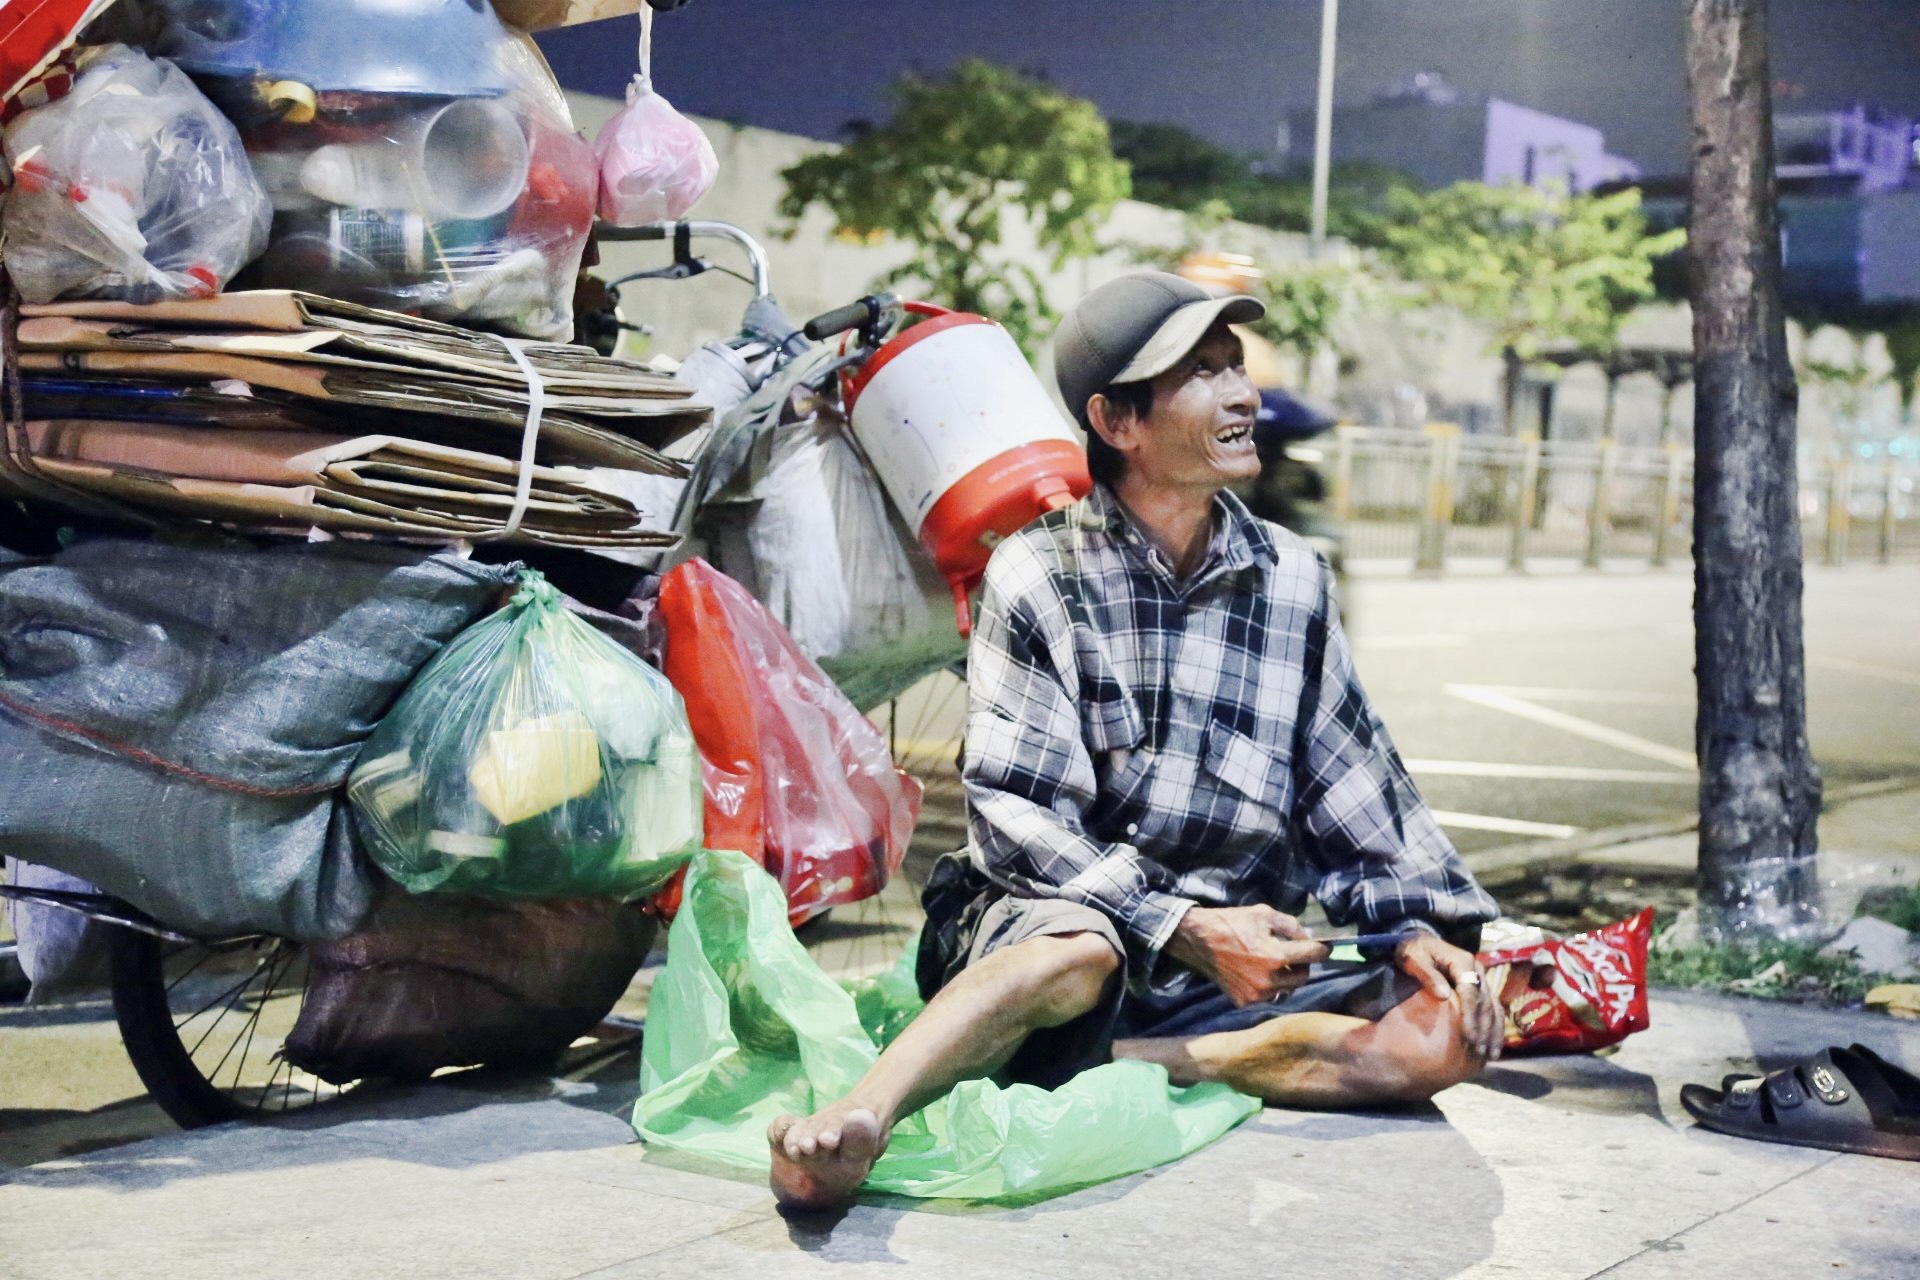 Không có nhà để về, người vô gia cư co ro trong đêm Sài Gòn ngày cận Tết - Ảnh 3.